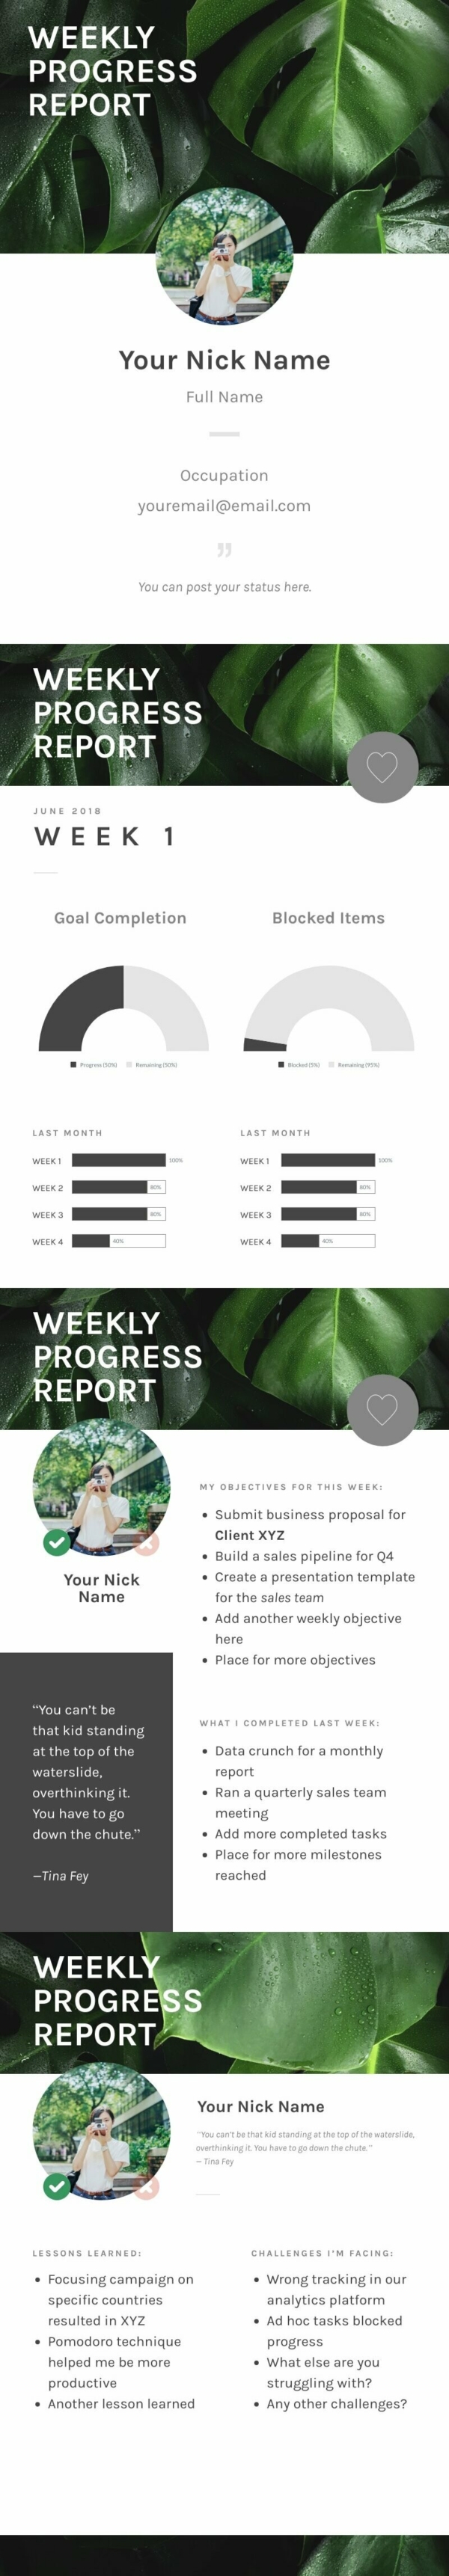 Weekly Progress Report